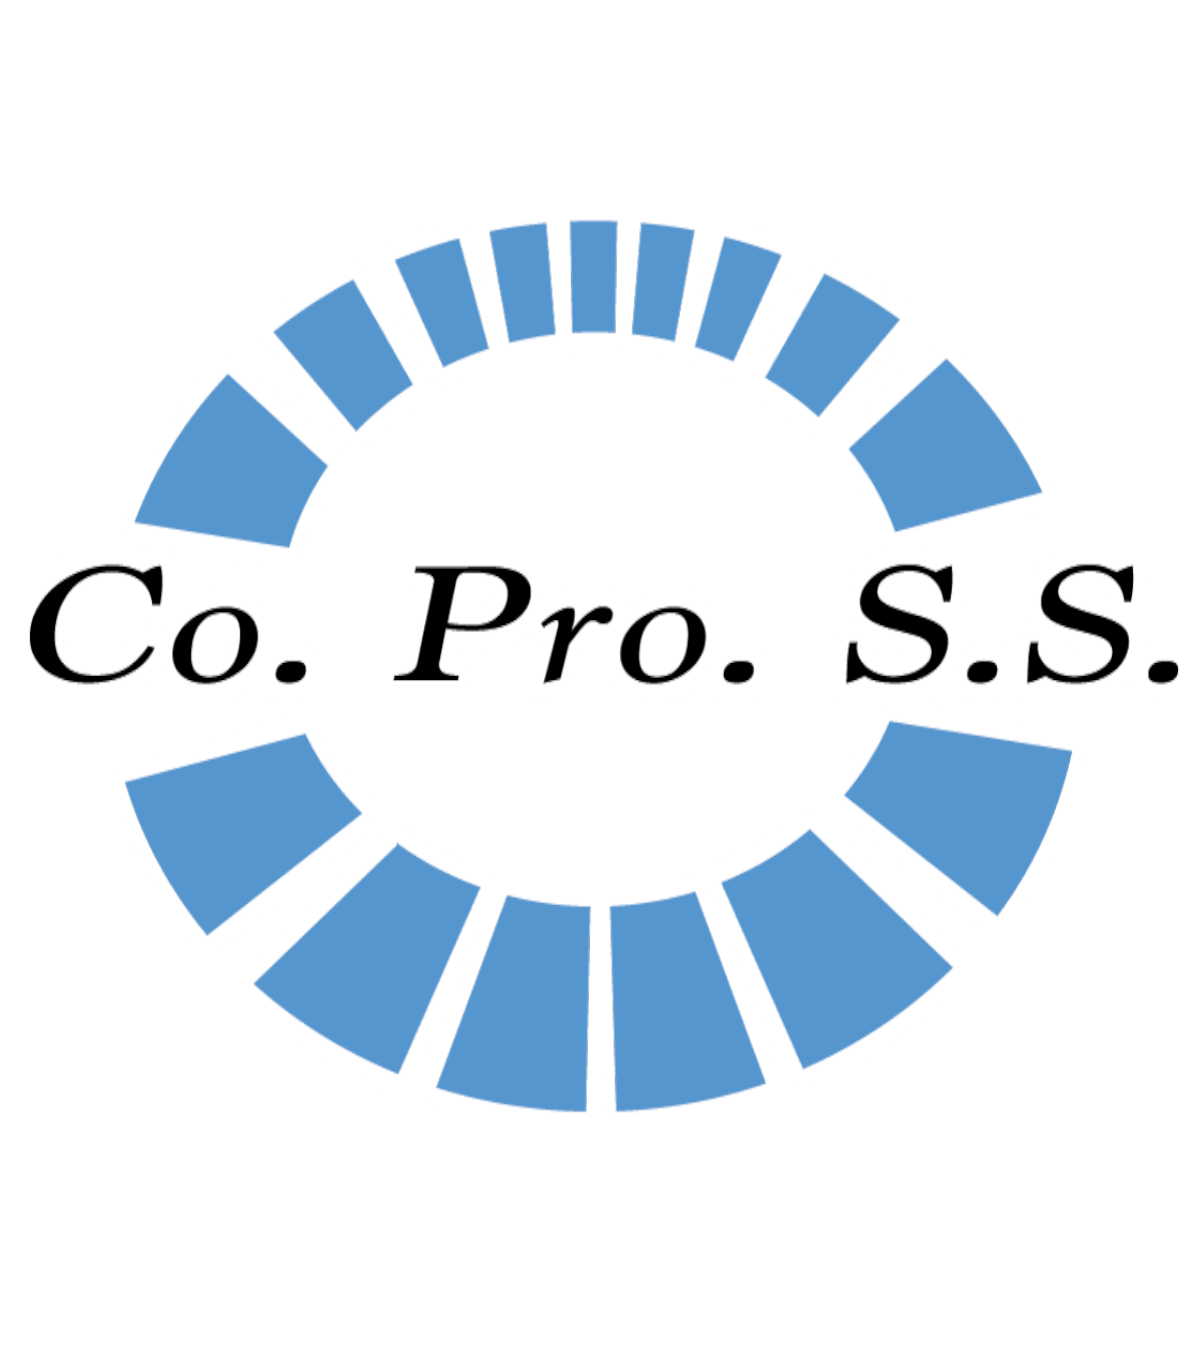 Logo Co.Pro.S.S.